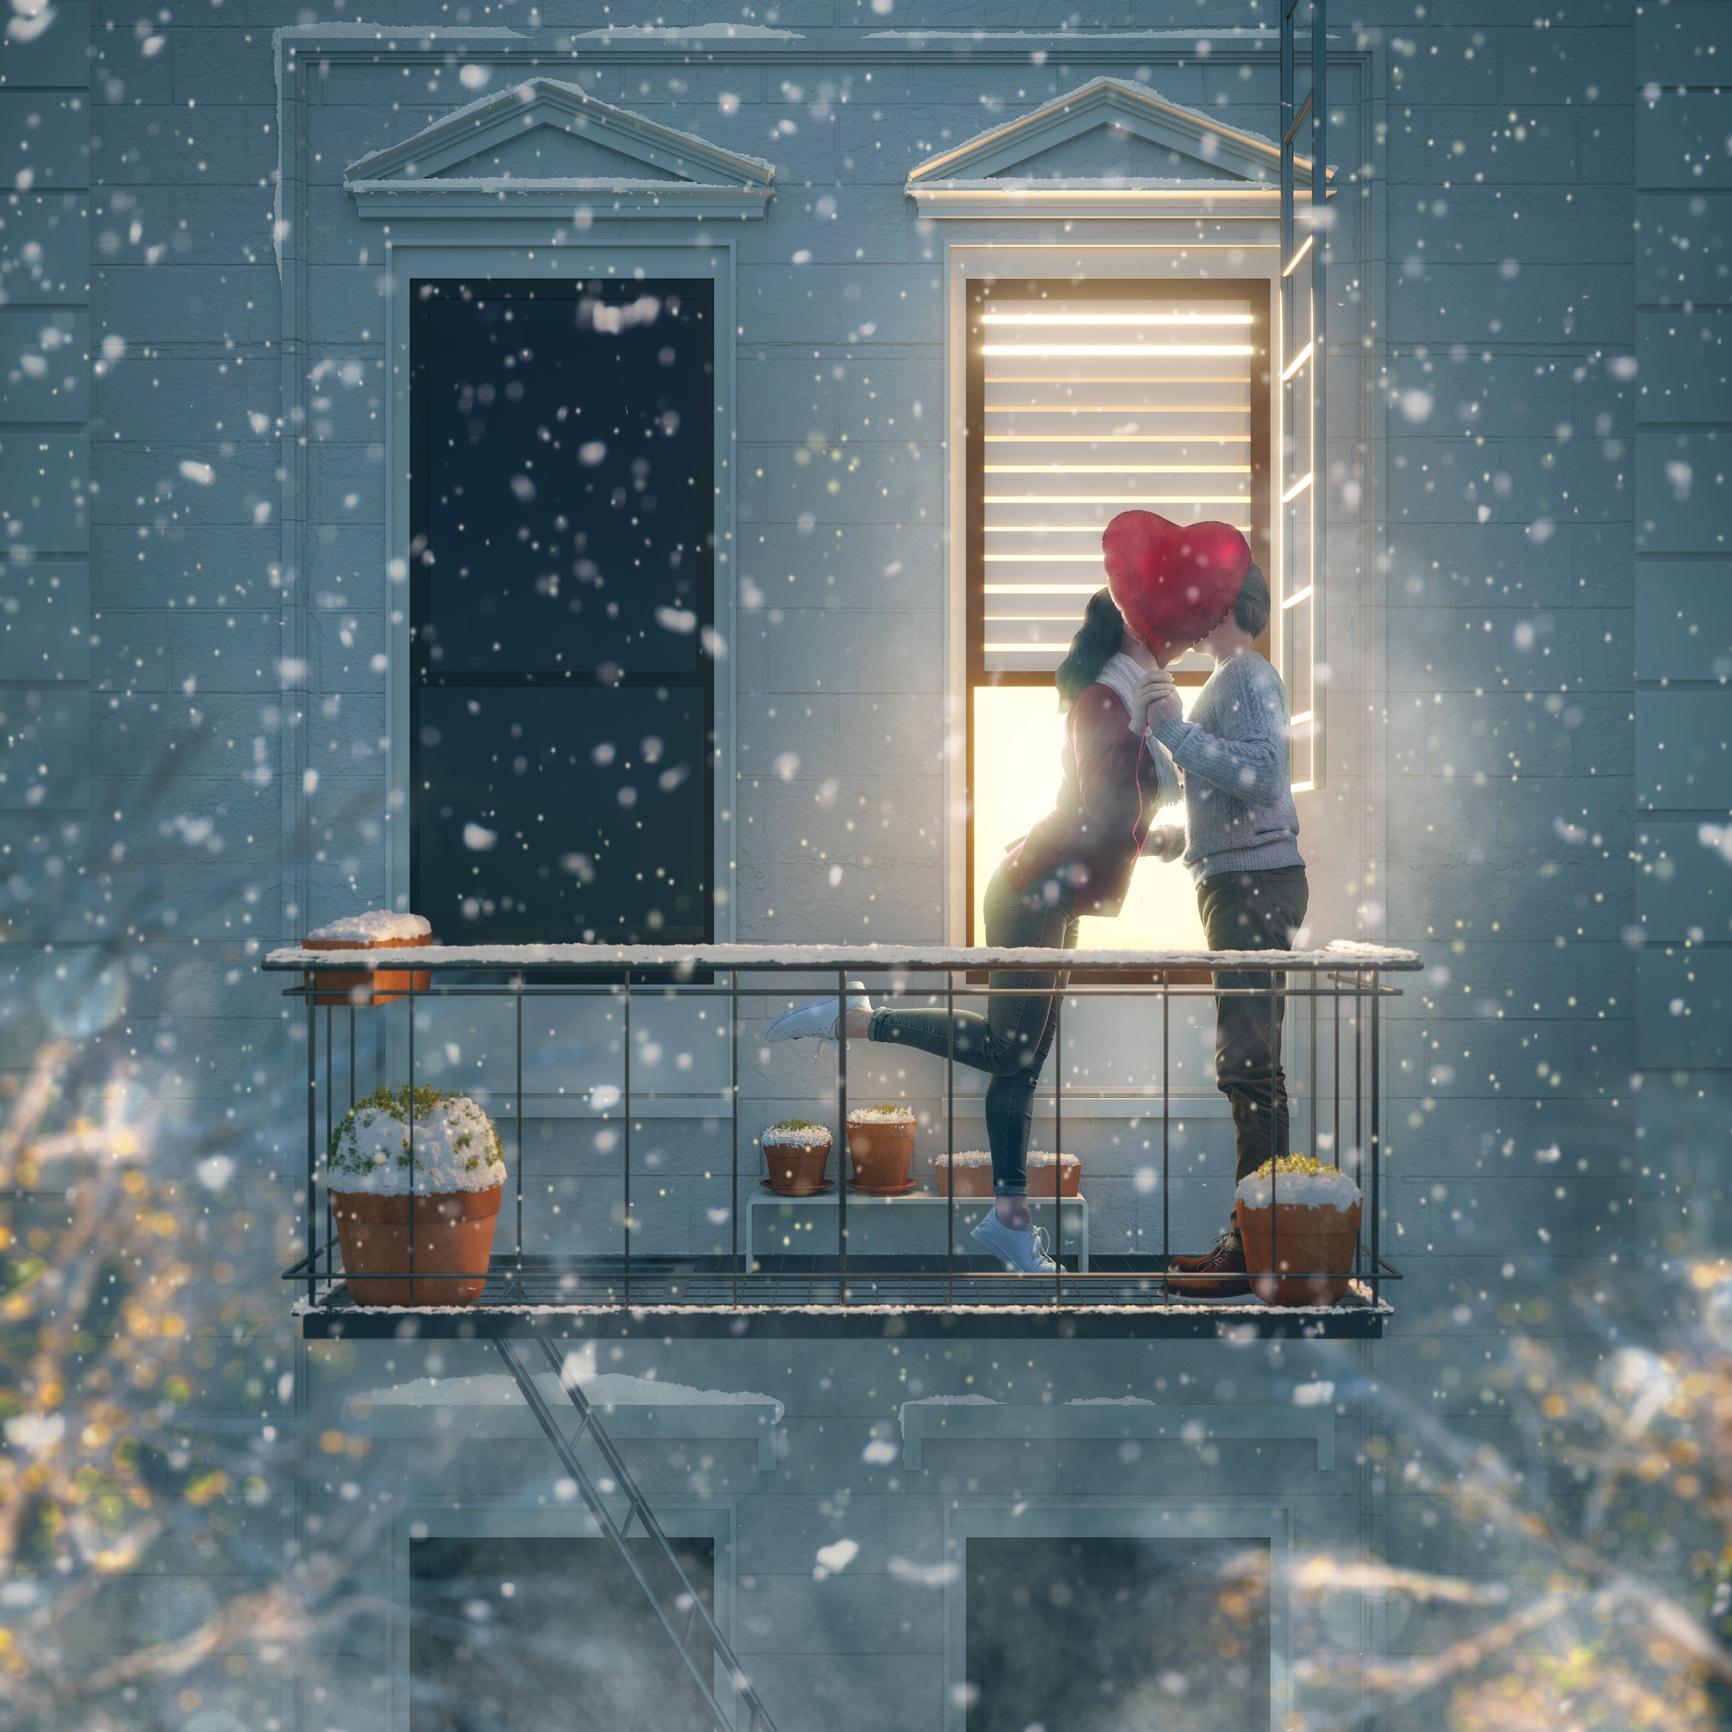 Бесплатное изображение: Свеча, При свечах, Рождество, украшения, Подарки,  любовь, Романтика, игрушка-плюшевый мишка, Зима, снег